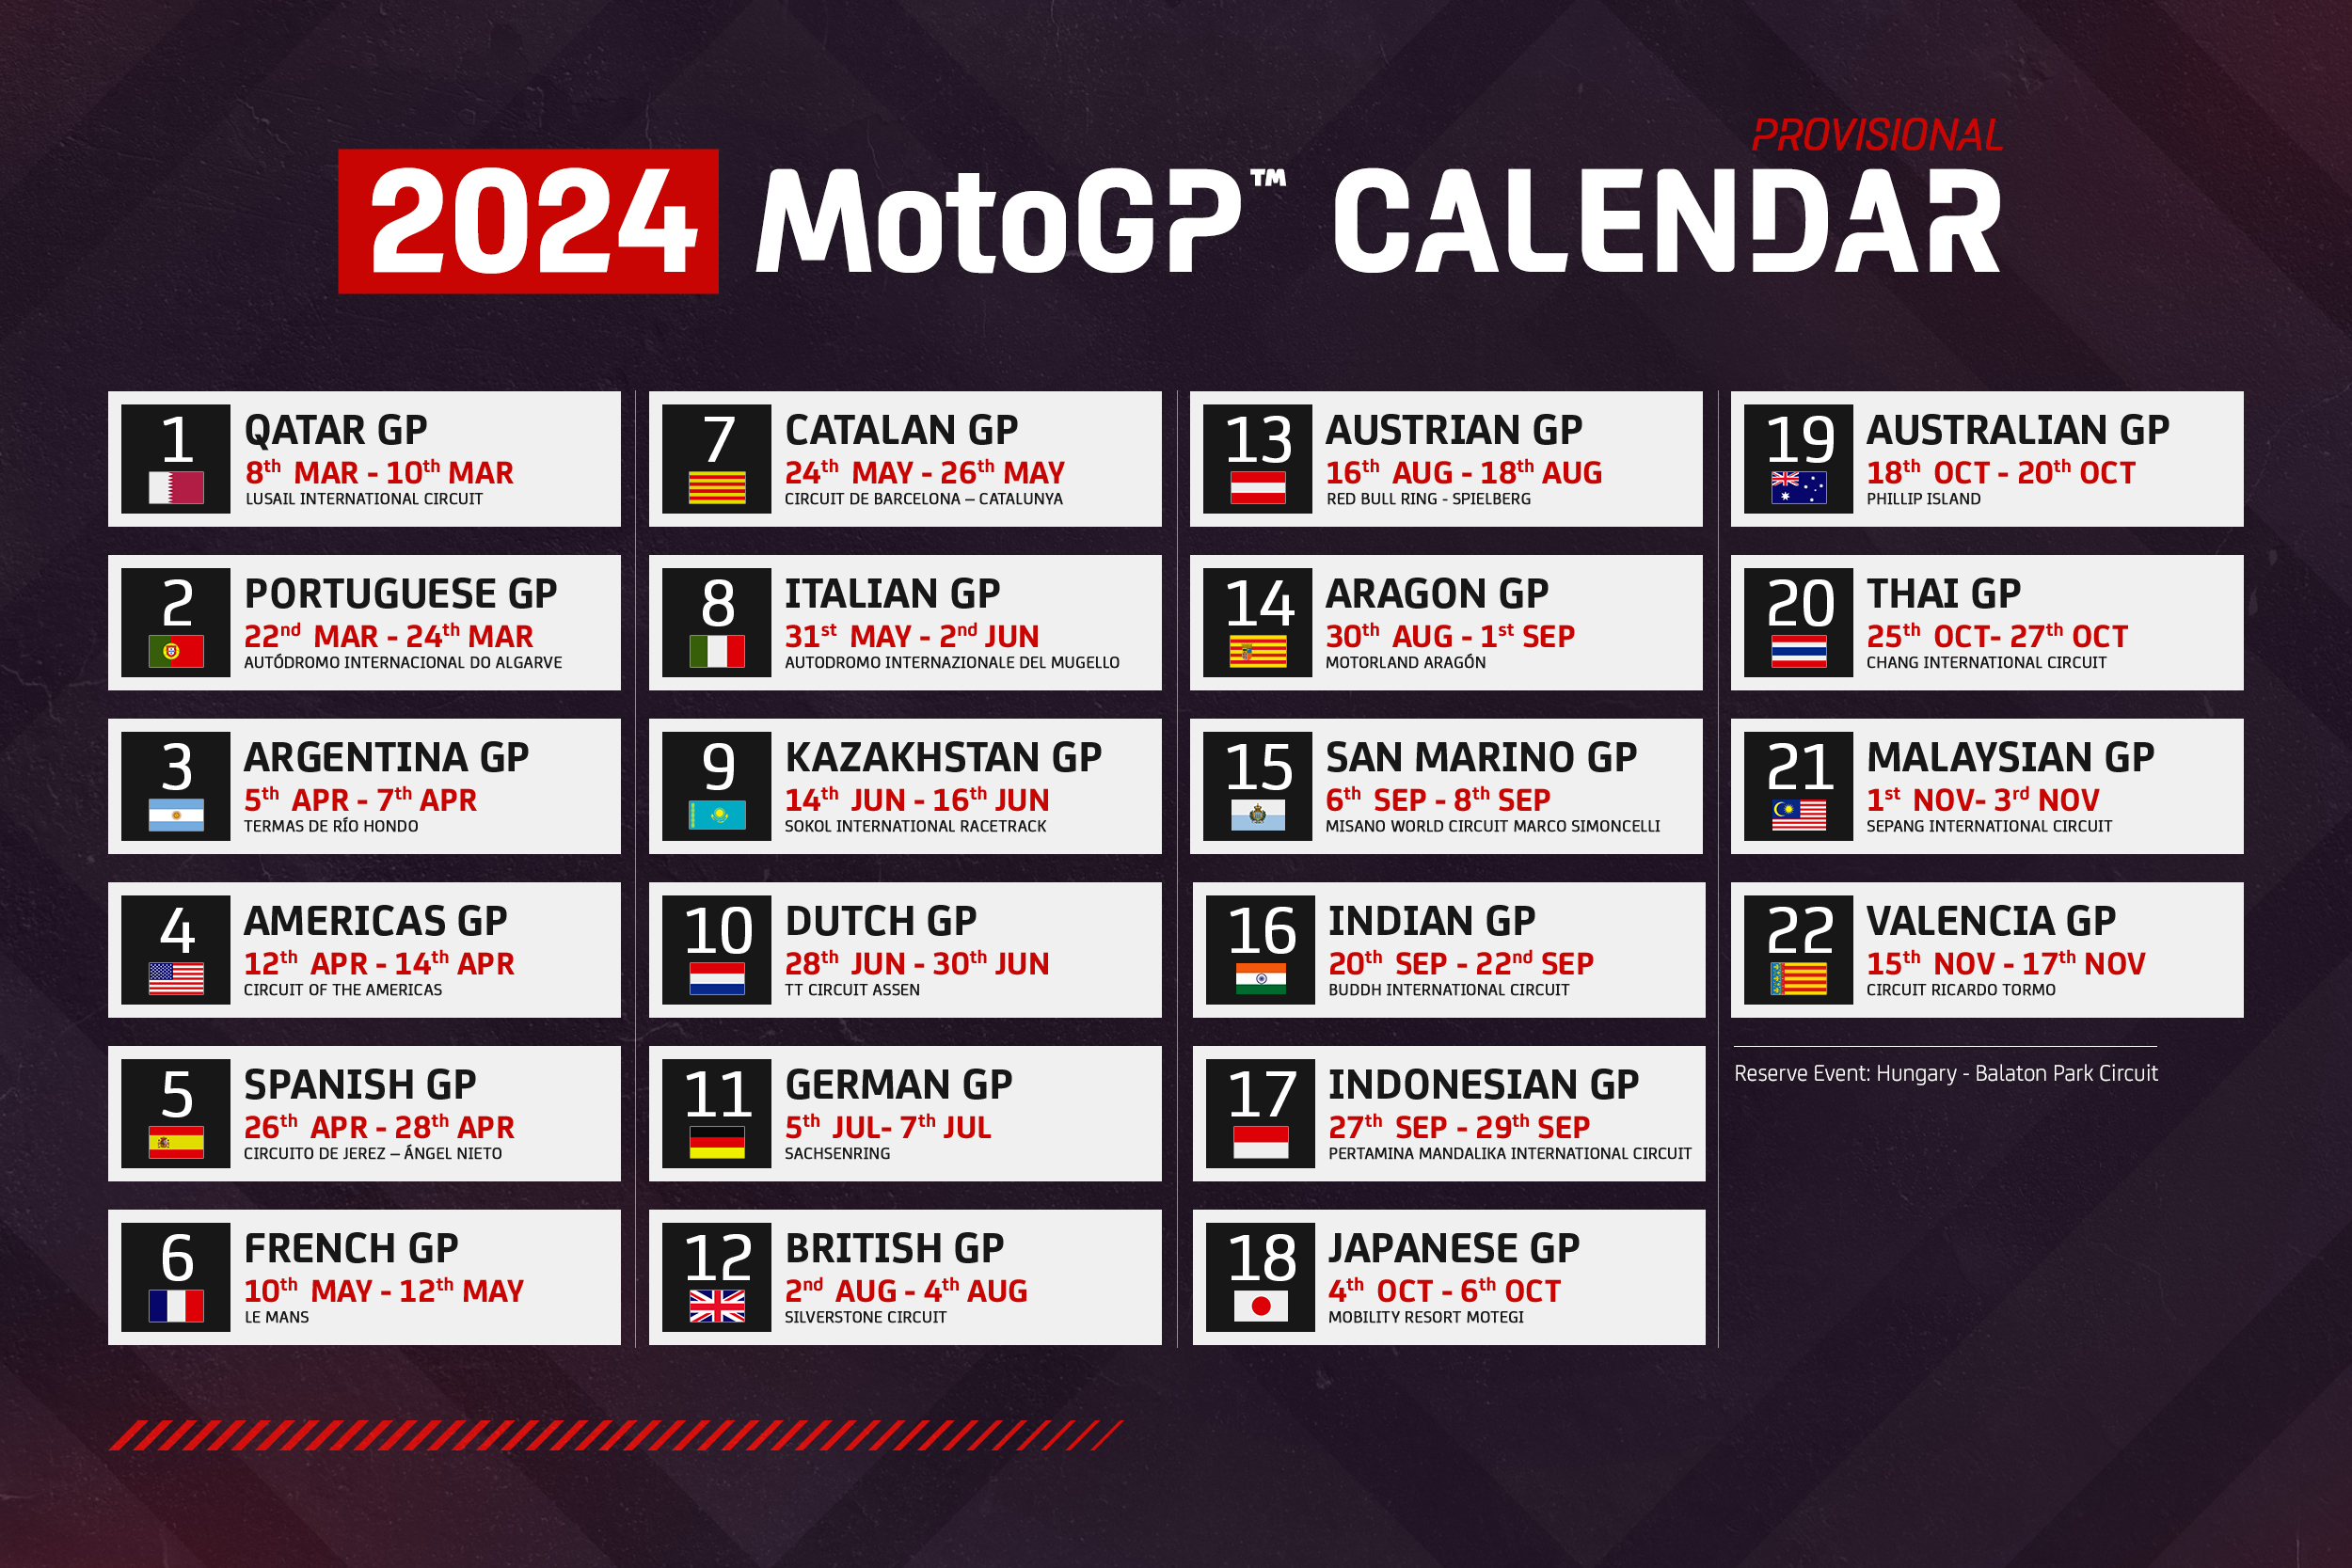 2025 Motogp Calendar Release Date